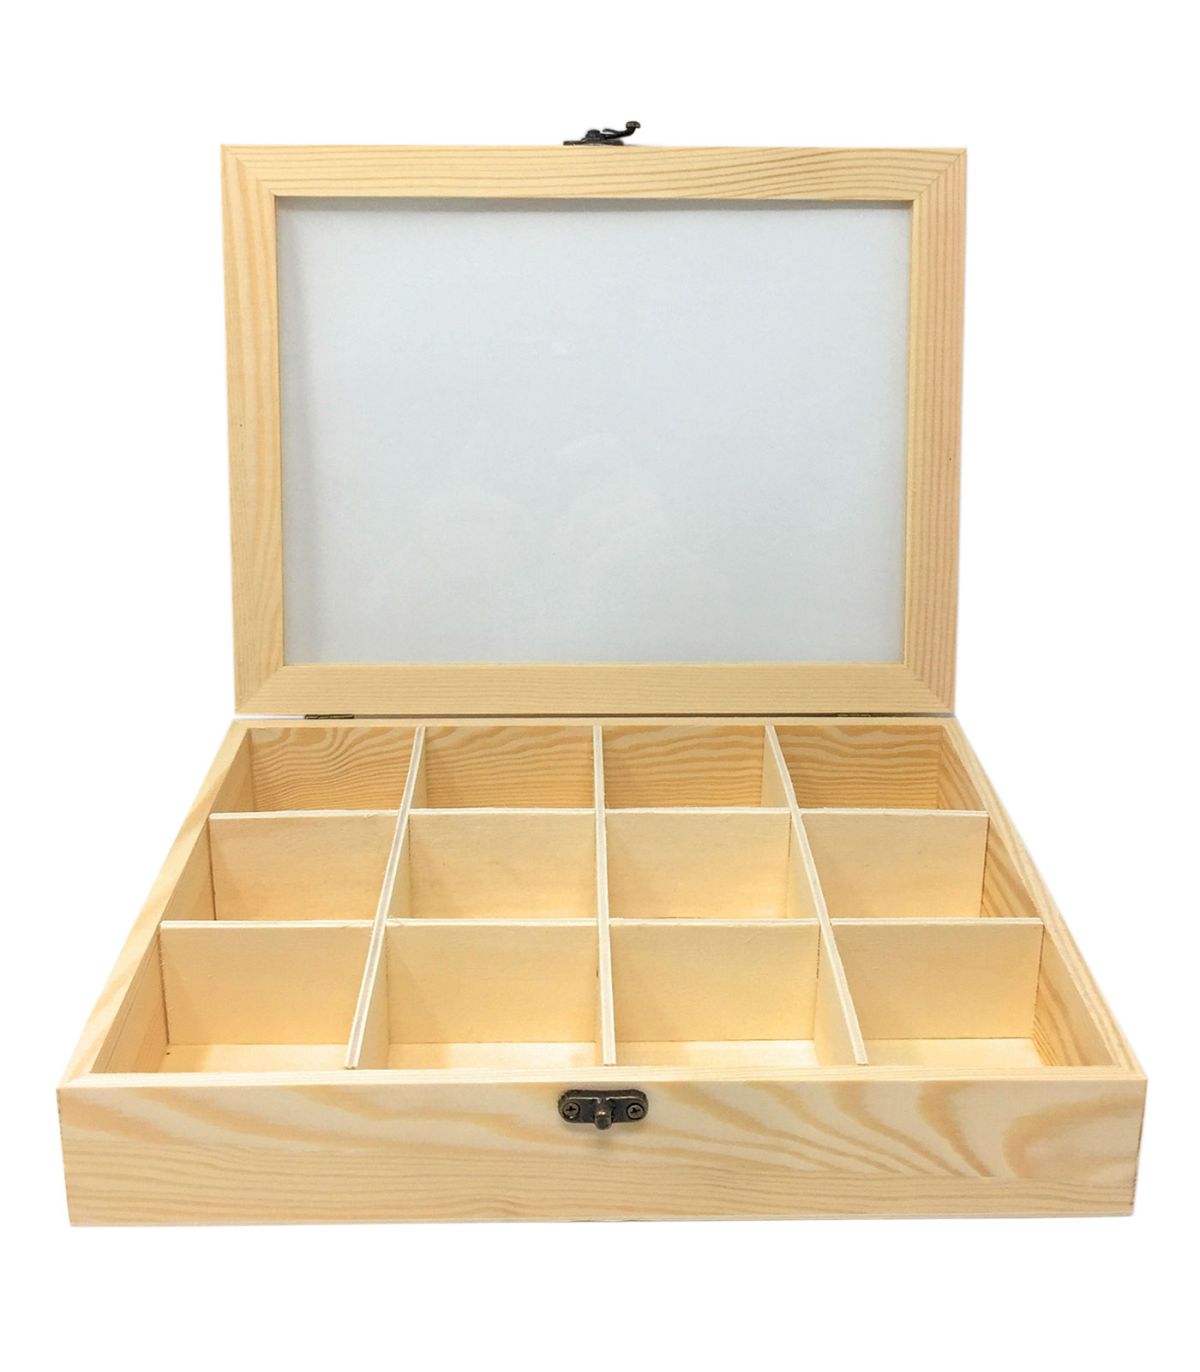 Tradineur - Caja de madera con 12 compartimentos y tapa con cristal, joyero,  expositor de joyas, organizador, collares, anillos